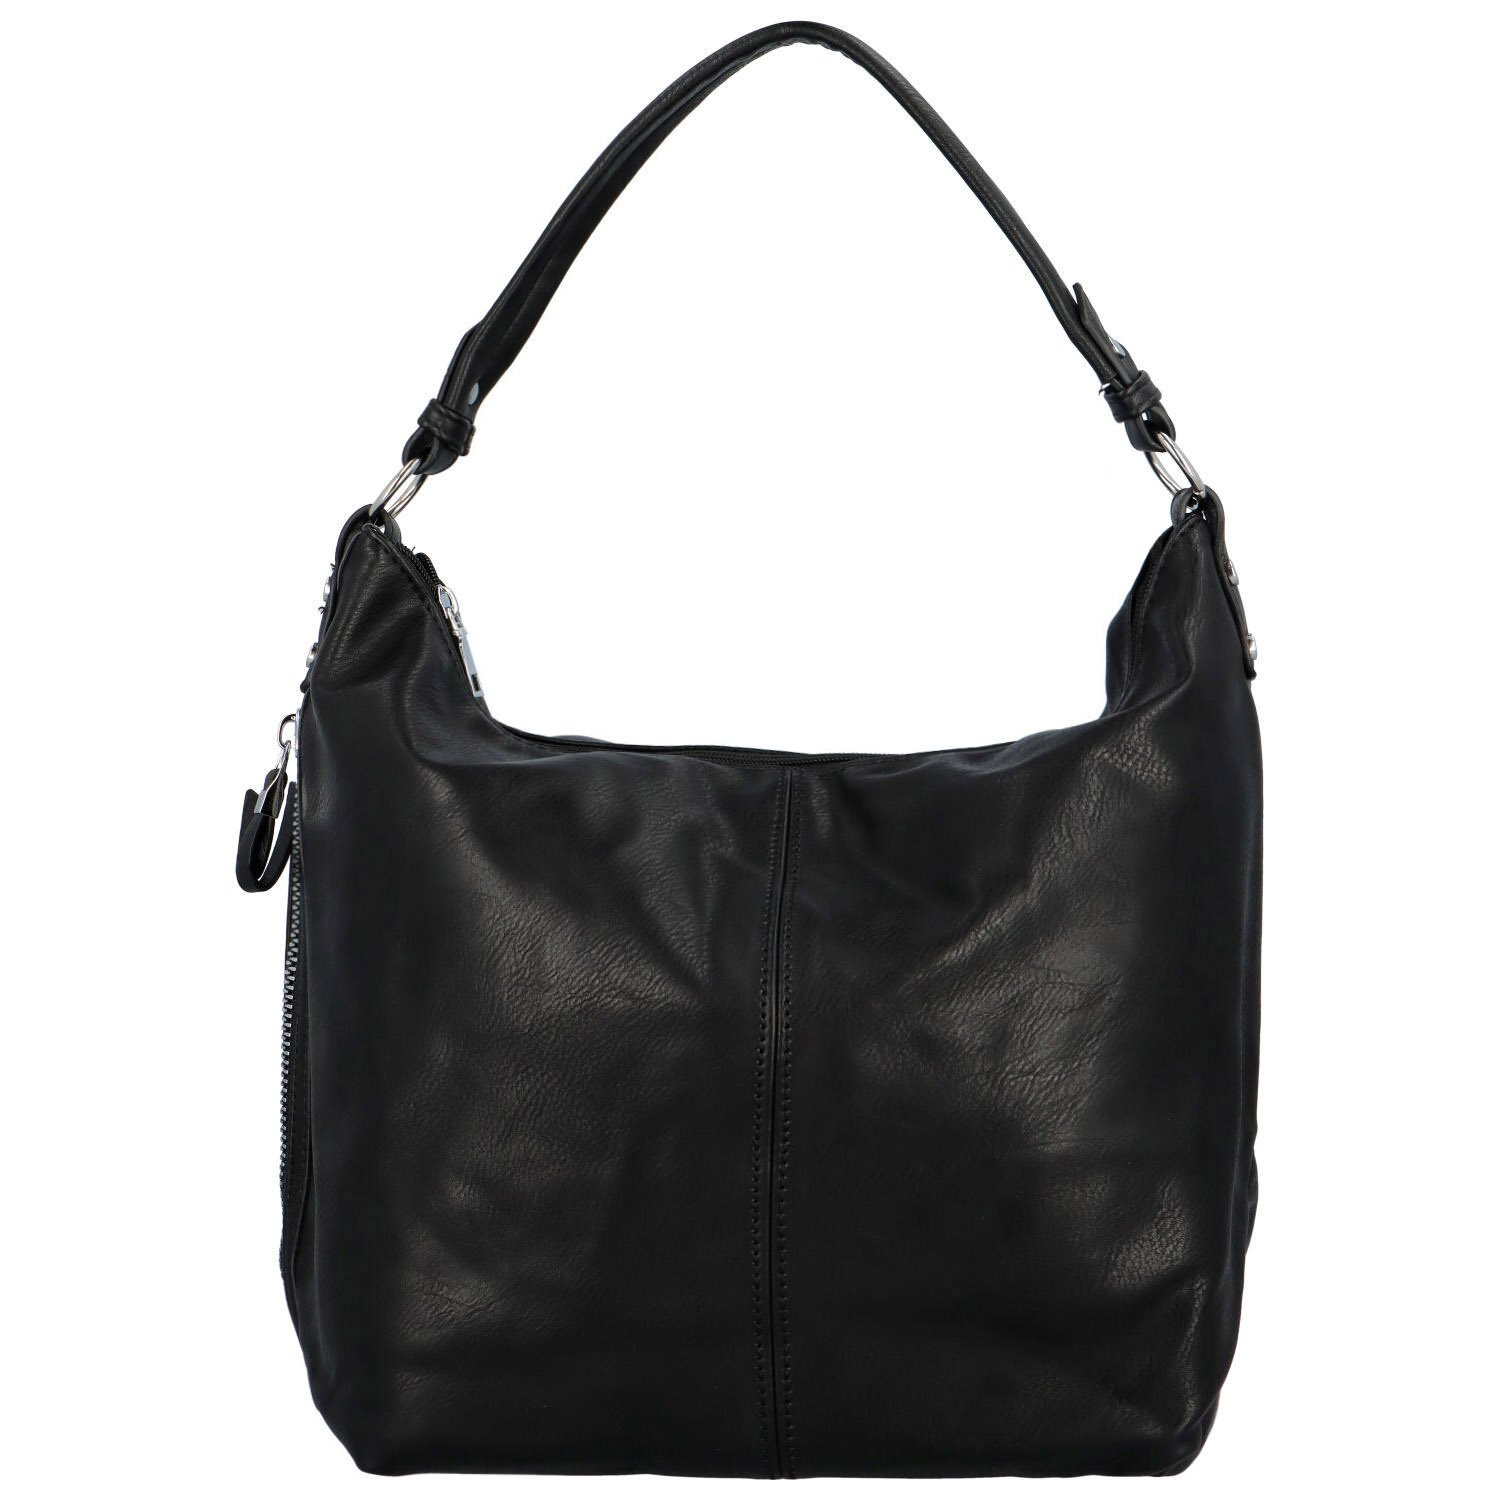 Dámská kabelka na rameno černá - Romina & Co Bags Elianora černá